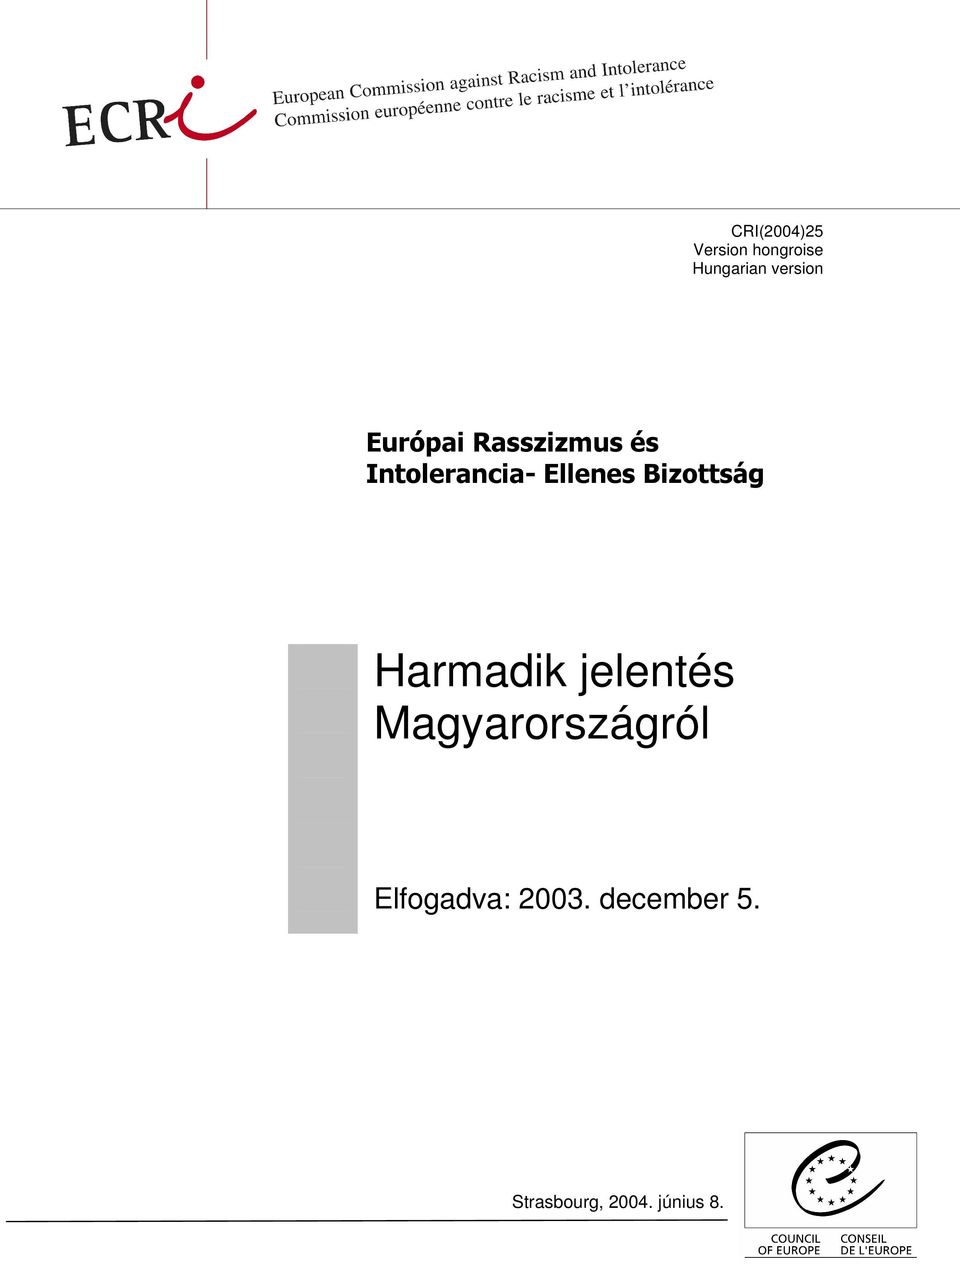 Bizottság Harmadik jelentés Magyarországról